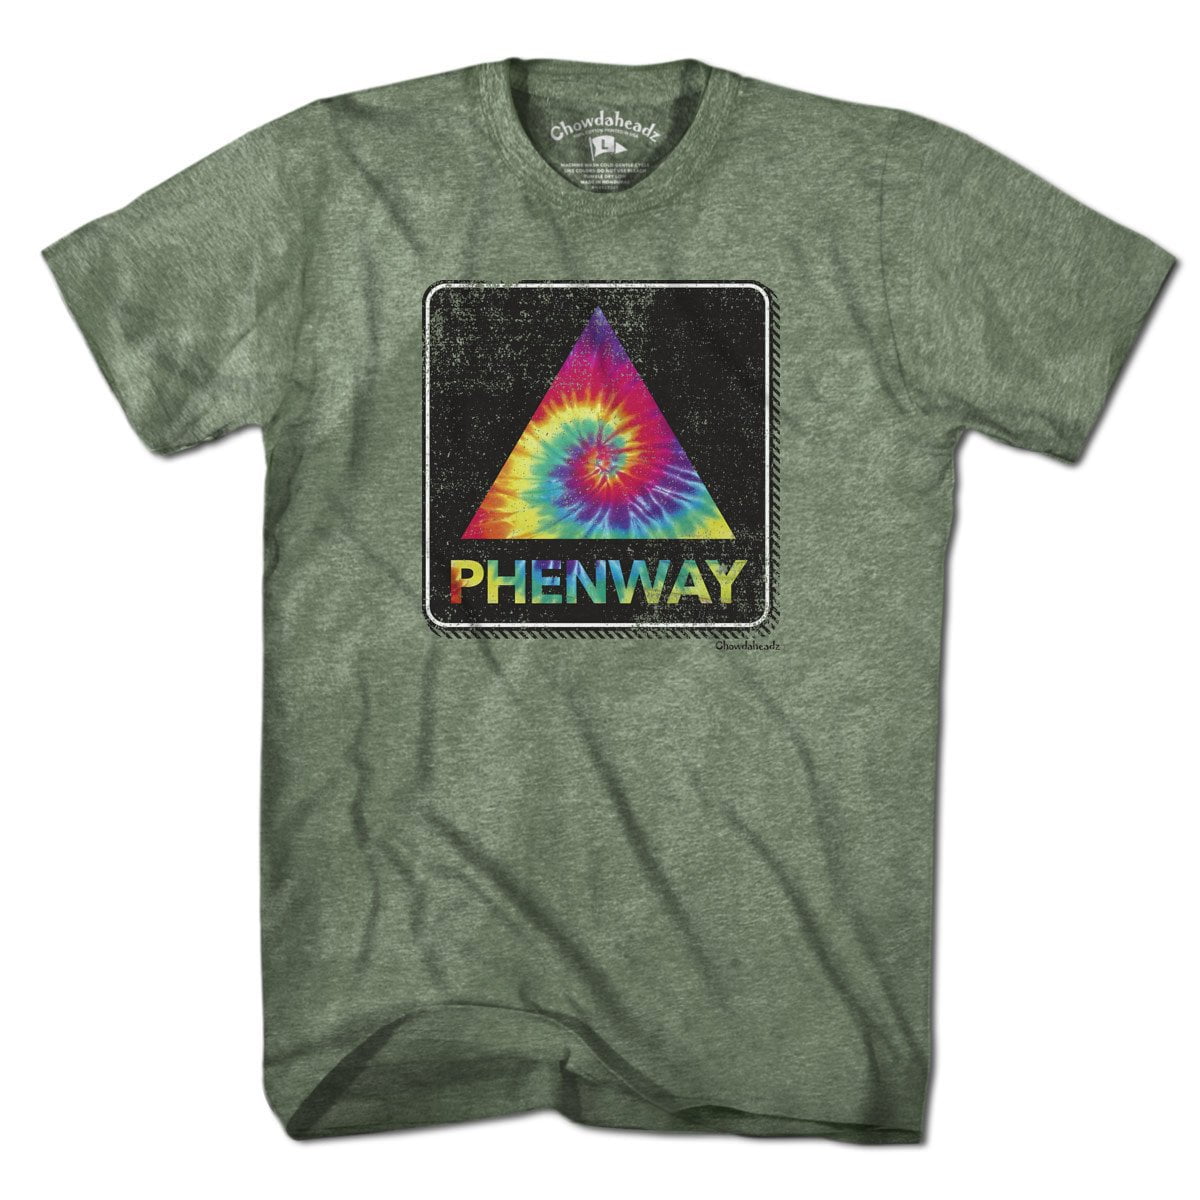 Phenway Tie Dye T-Shirt - Chowdaheadz